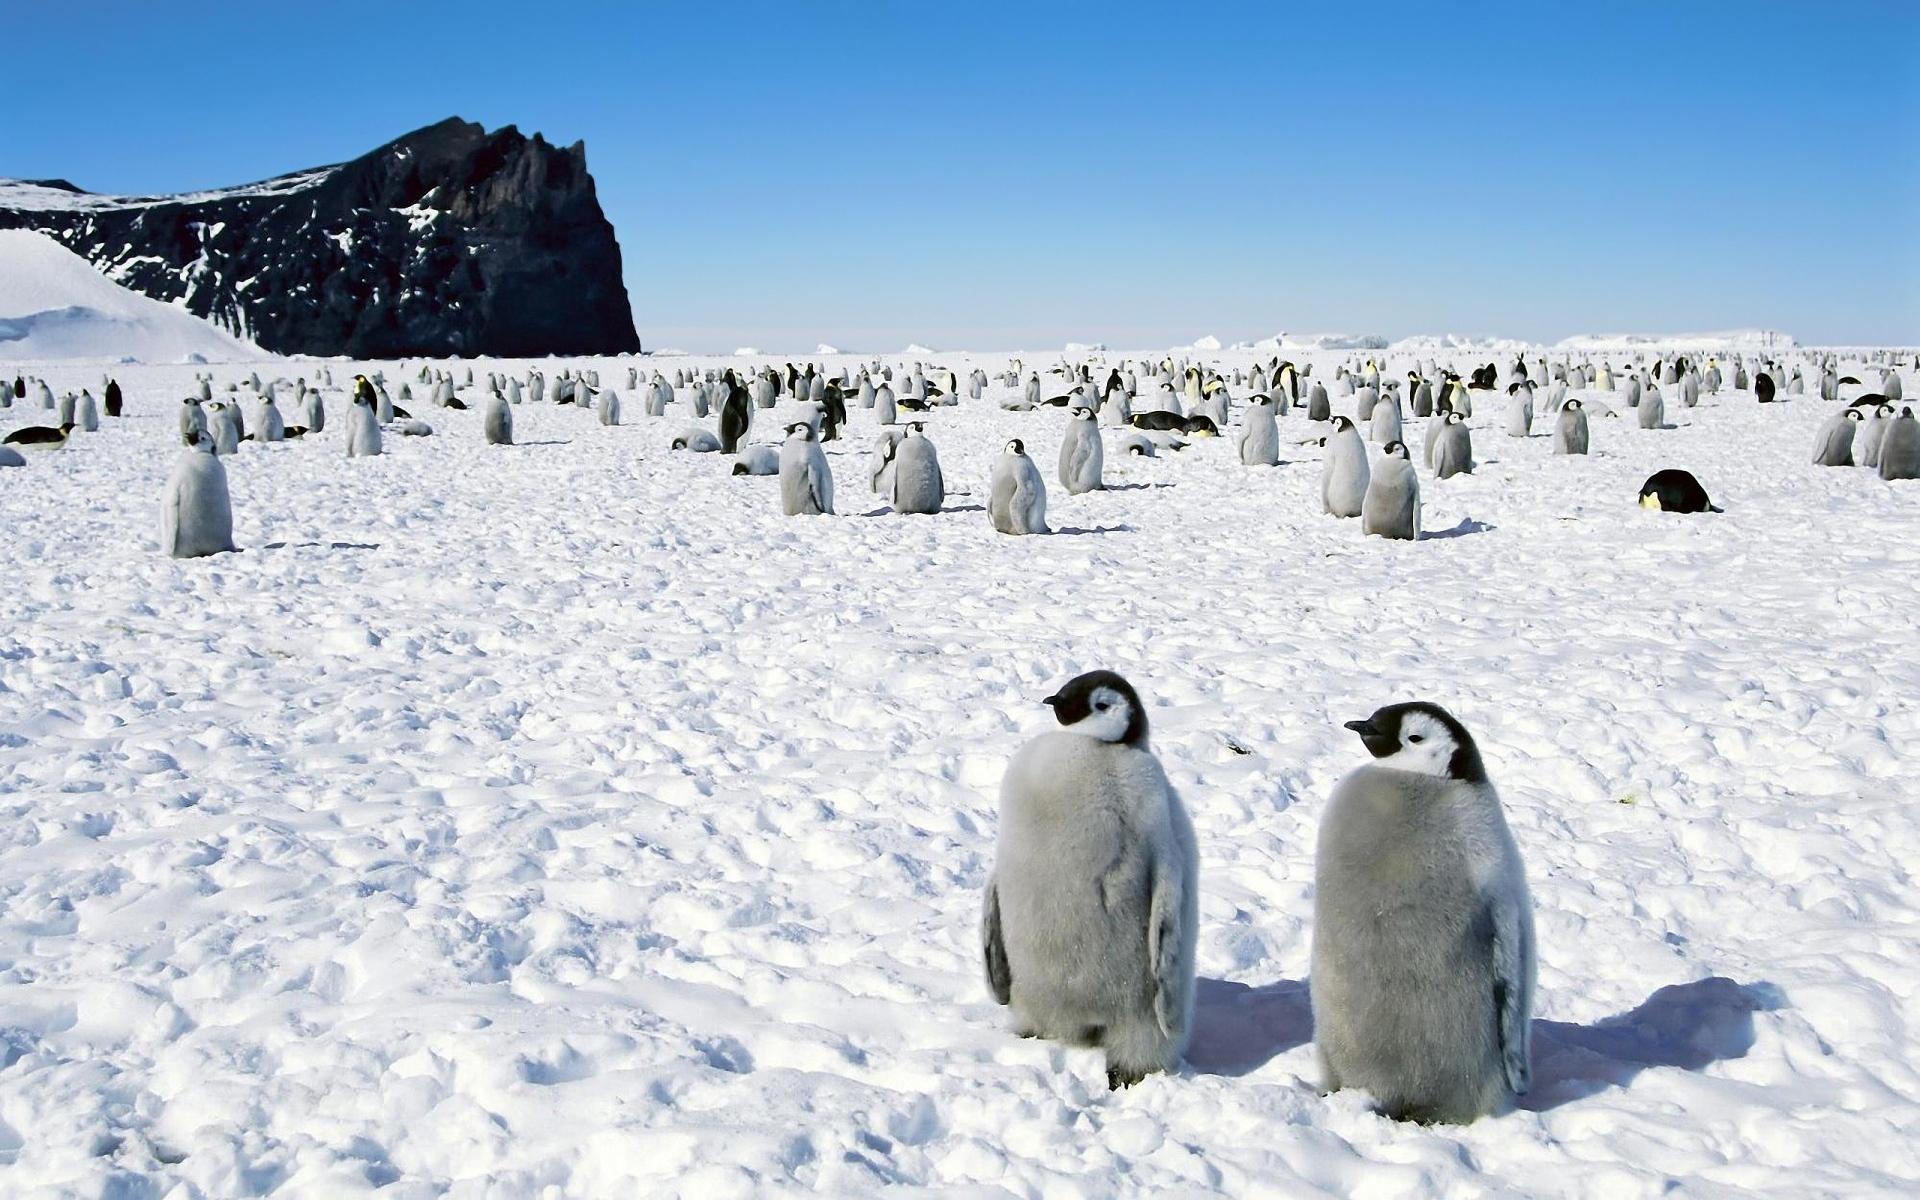 Penguins in Antarctica wallpaper download. Wallpaper, picture